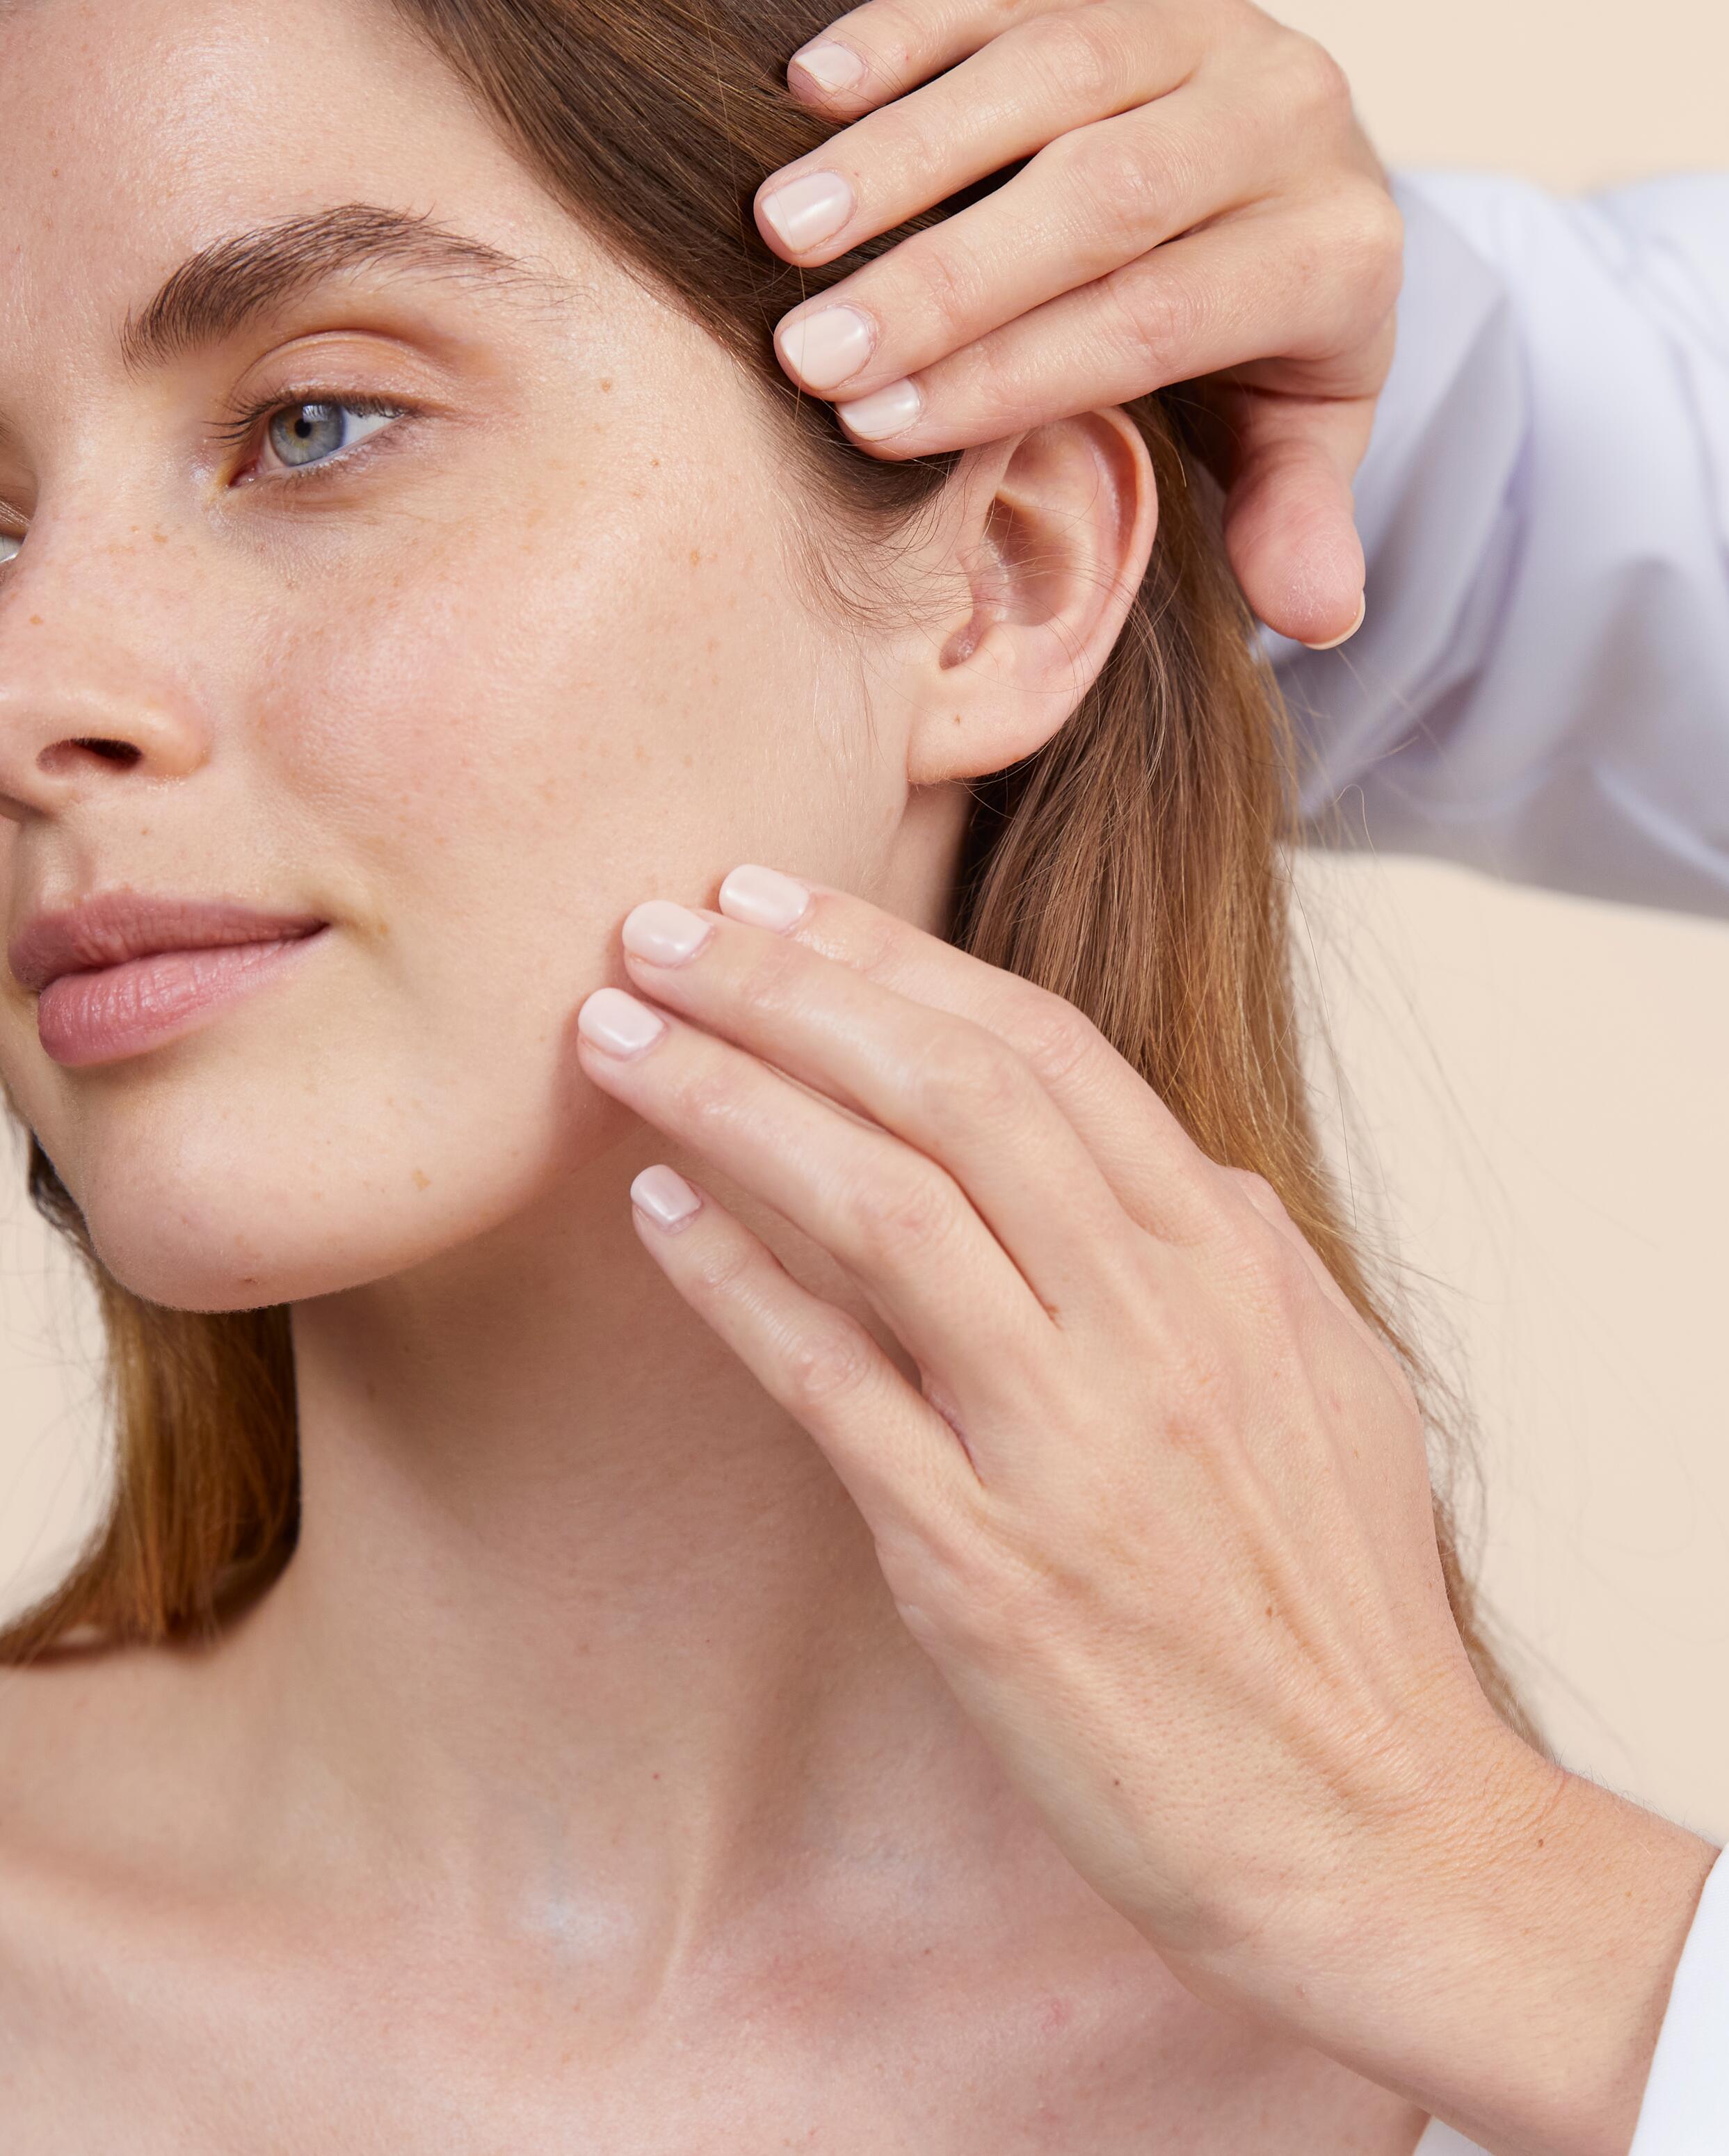 Dermatološka nega, ki zagotavlja optimalno toleranco za vse vrste kože, nagnjene k alergijam.